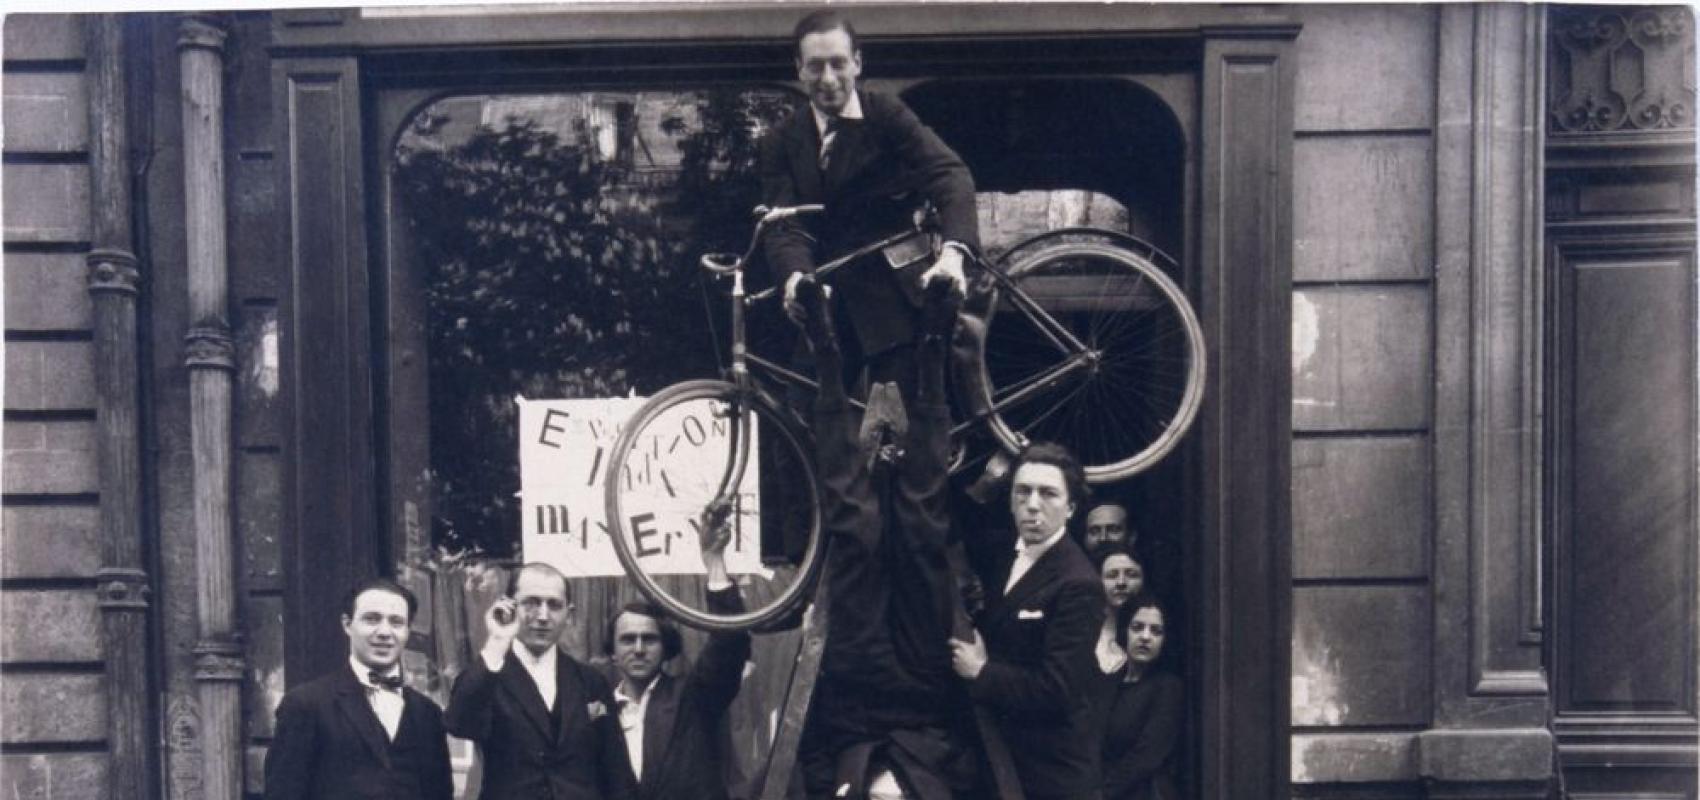 Photographie du groupe surréaliste lors du vernissage de l'exposition « Dada Max Ernst », le 2 mai 1921 -  - Auteur inconnu © Chancellerie des Universités de Paris - BLJD, Paris / cliché © BnF / Suzanne Nagy